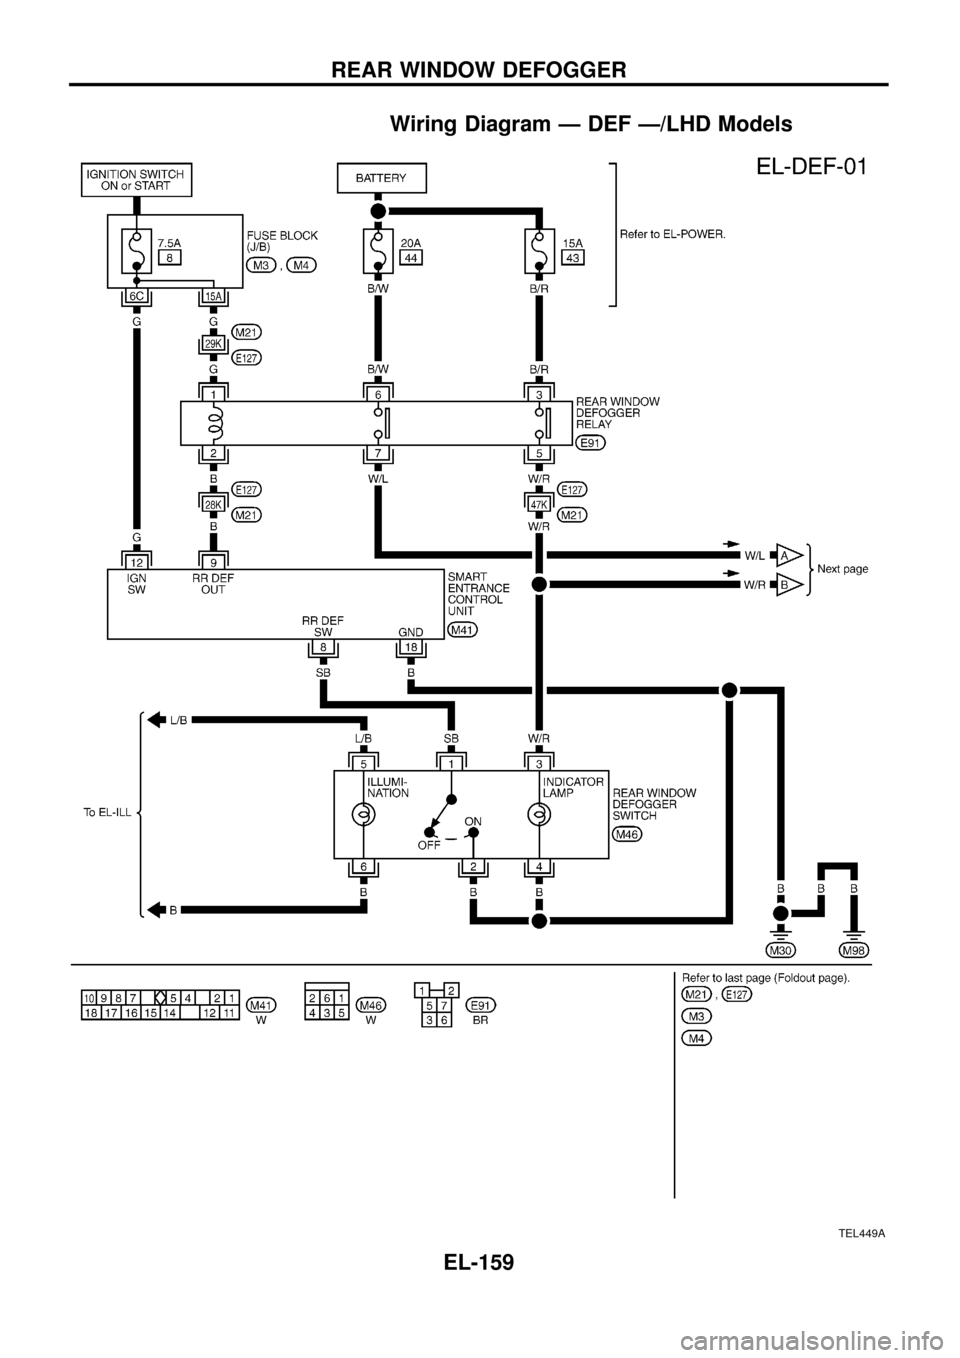 NISSAN PATROL 1998 Y61 / 5.G Electrical System Workshop Manual Wiring Diagram Ð DEF Ð/LHD Models
TEL449A
REAR WINDOW DEFOGGER
EL-159 